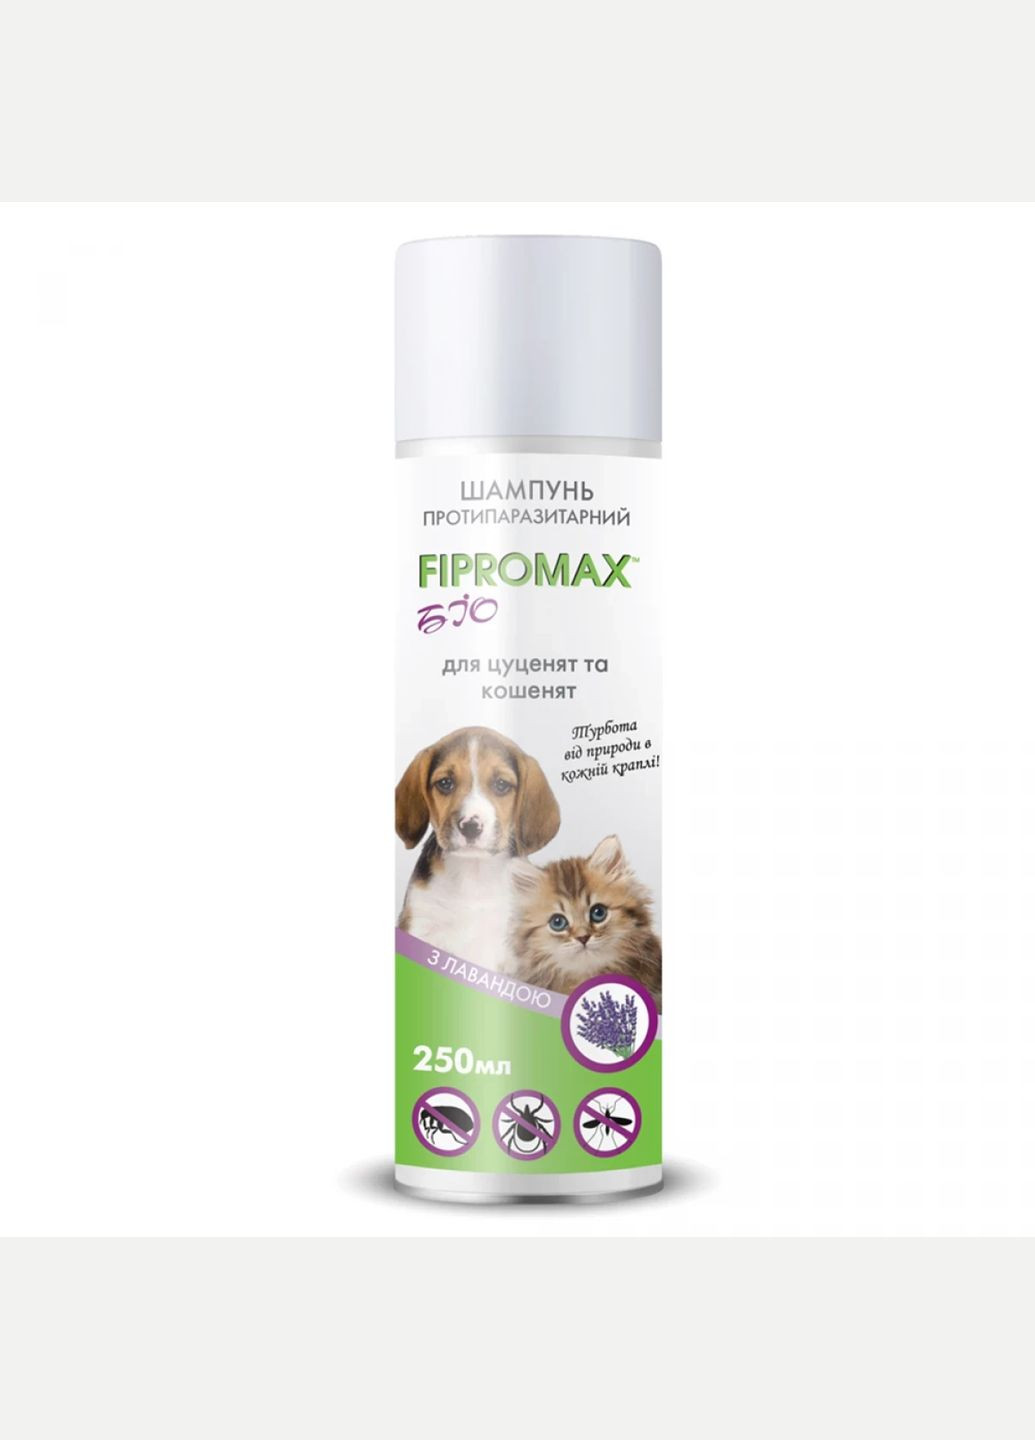 Шампунь FIPROMAX БиО противопаразитарный для щенят и котят с лавандой, 250 мл, 150158 No Brand (278411811)